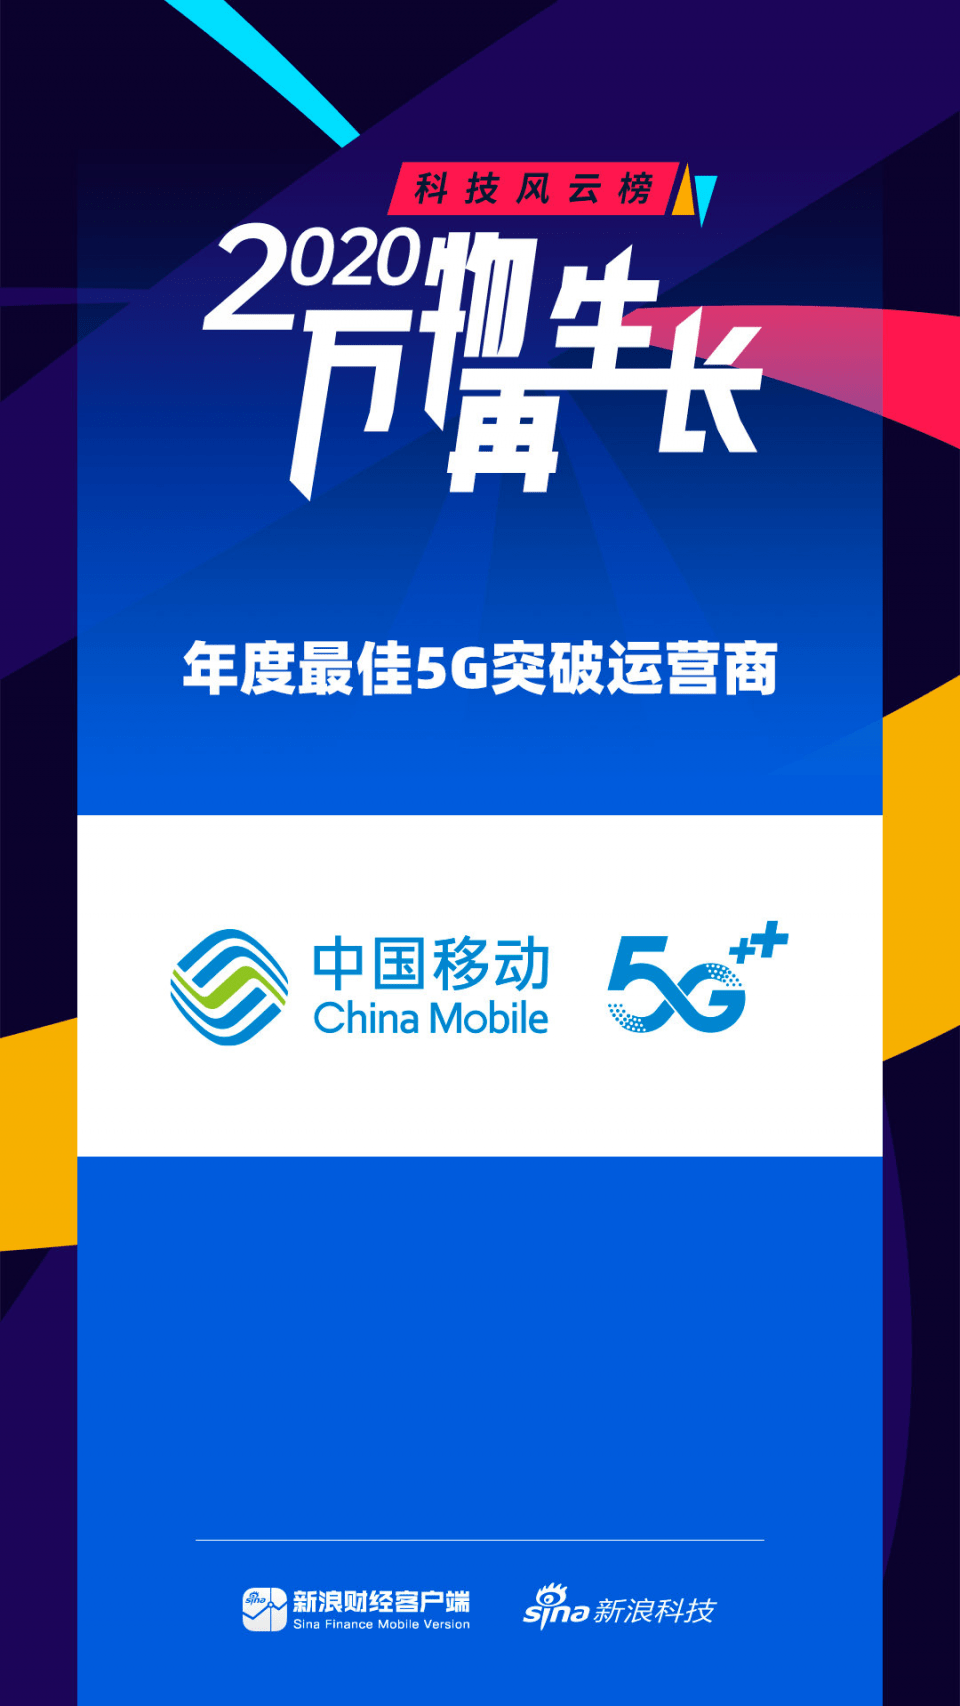 亚博APP买球英超首选_
中国移动获颁最佳5G突破运营商 网络、优惠、服务全面领先！(图1)